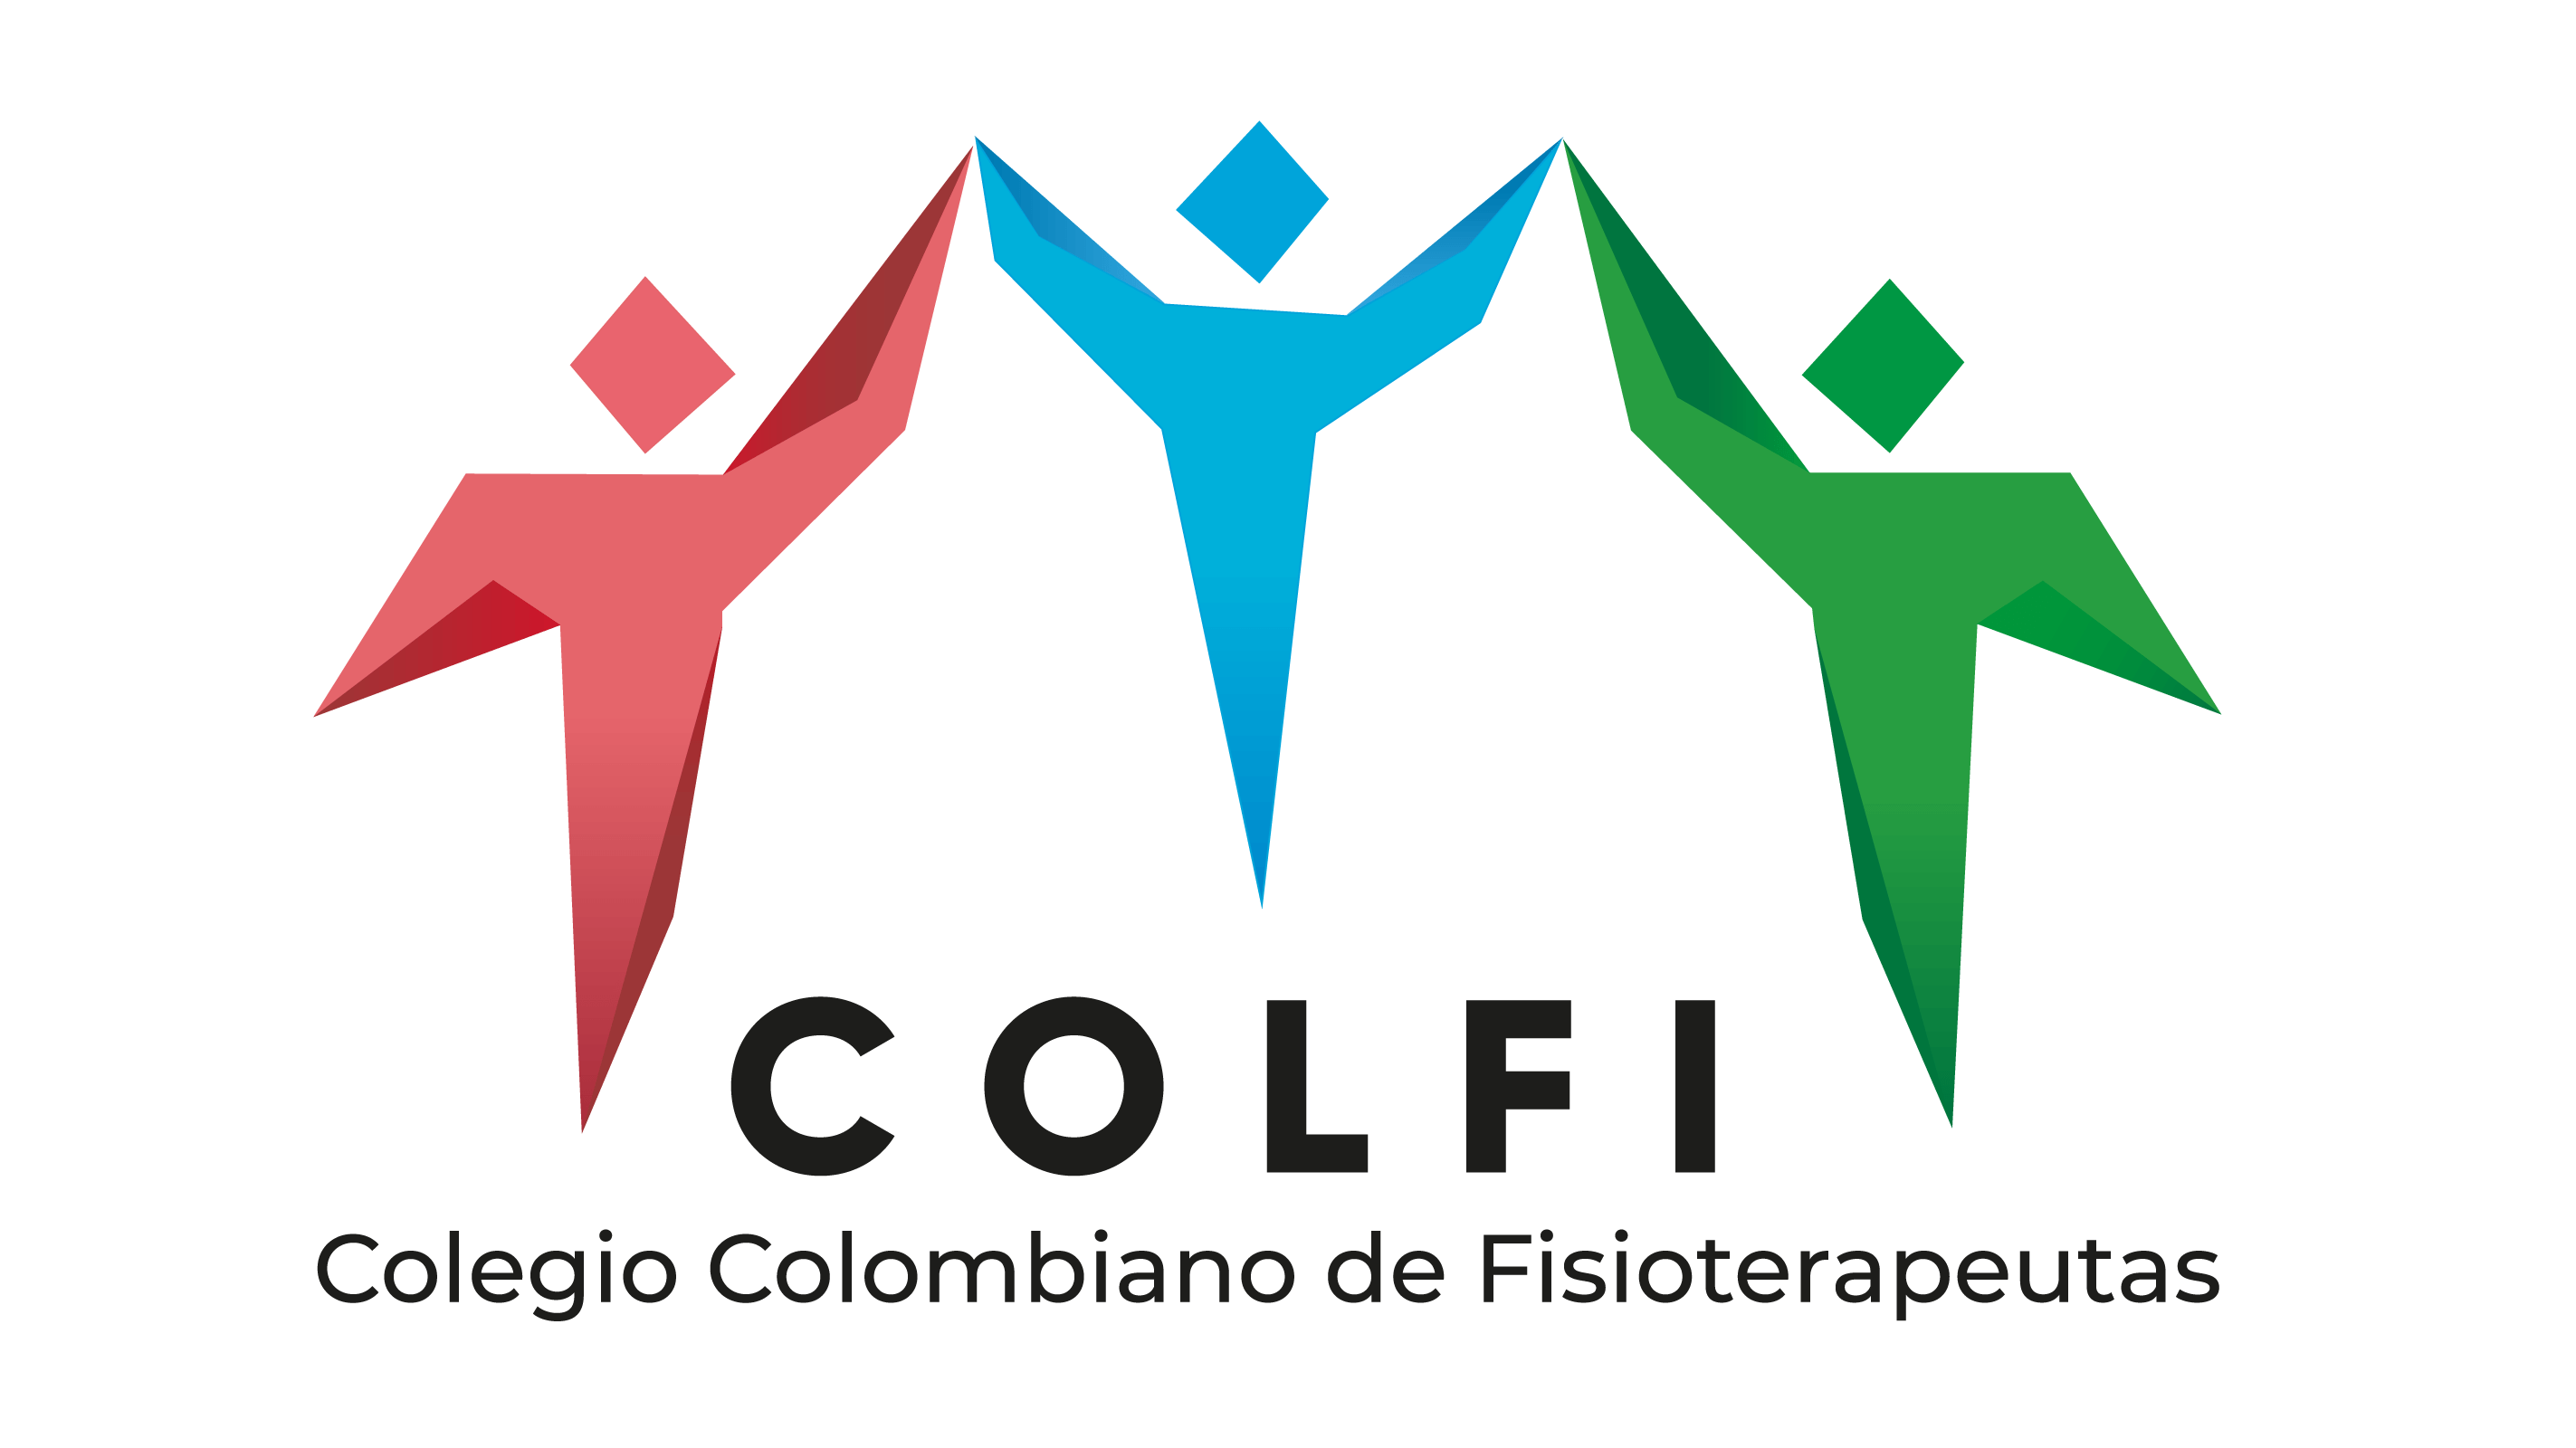 Colegio Colombiano de Fisioterapeutas